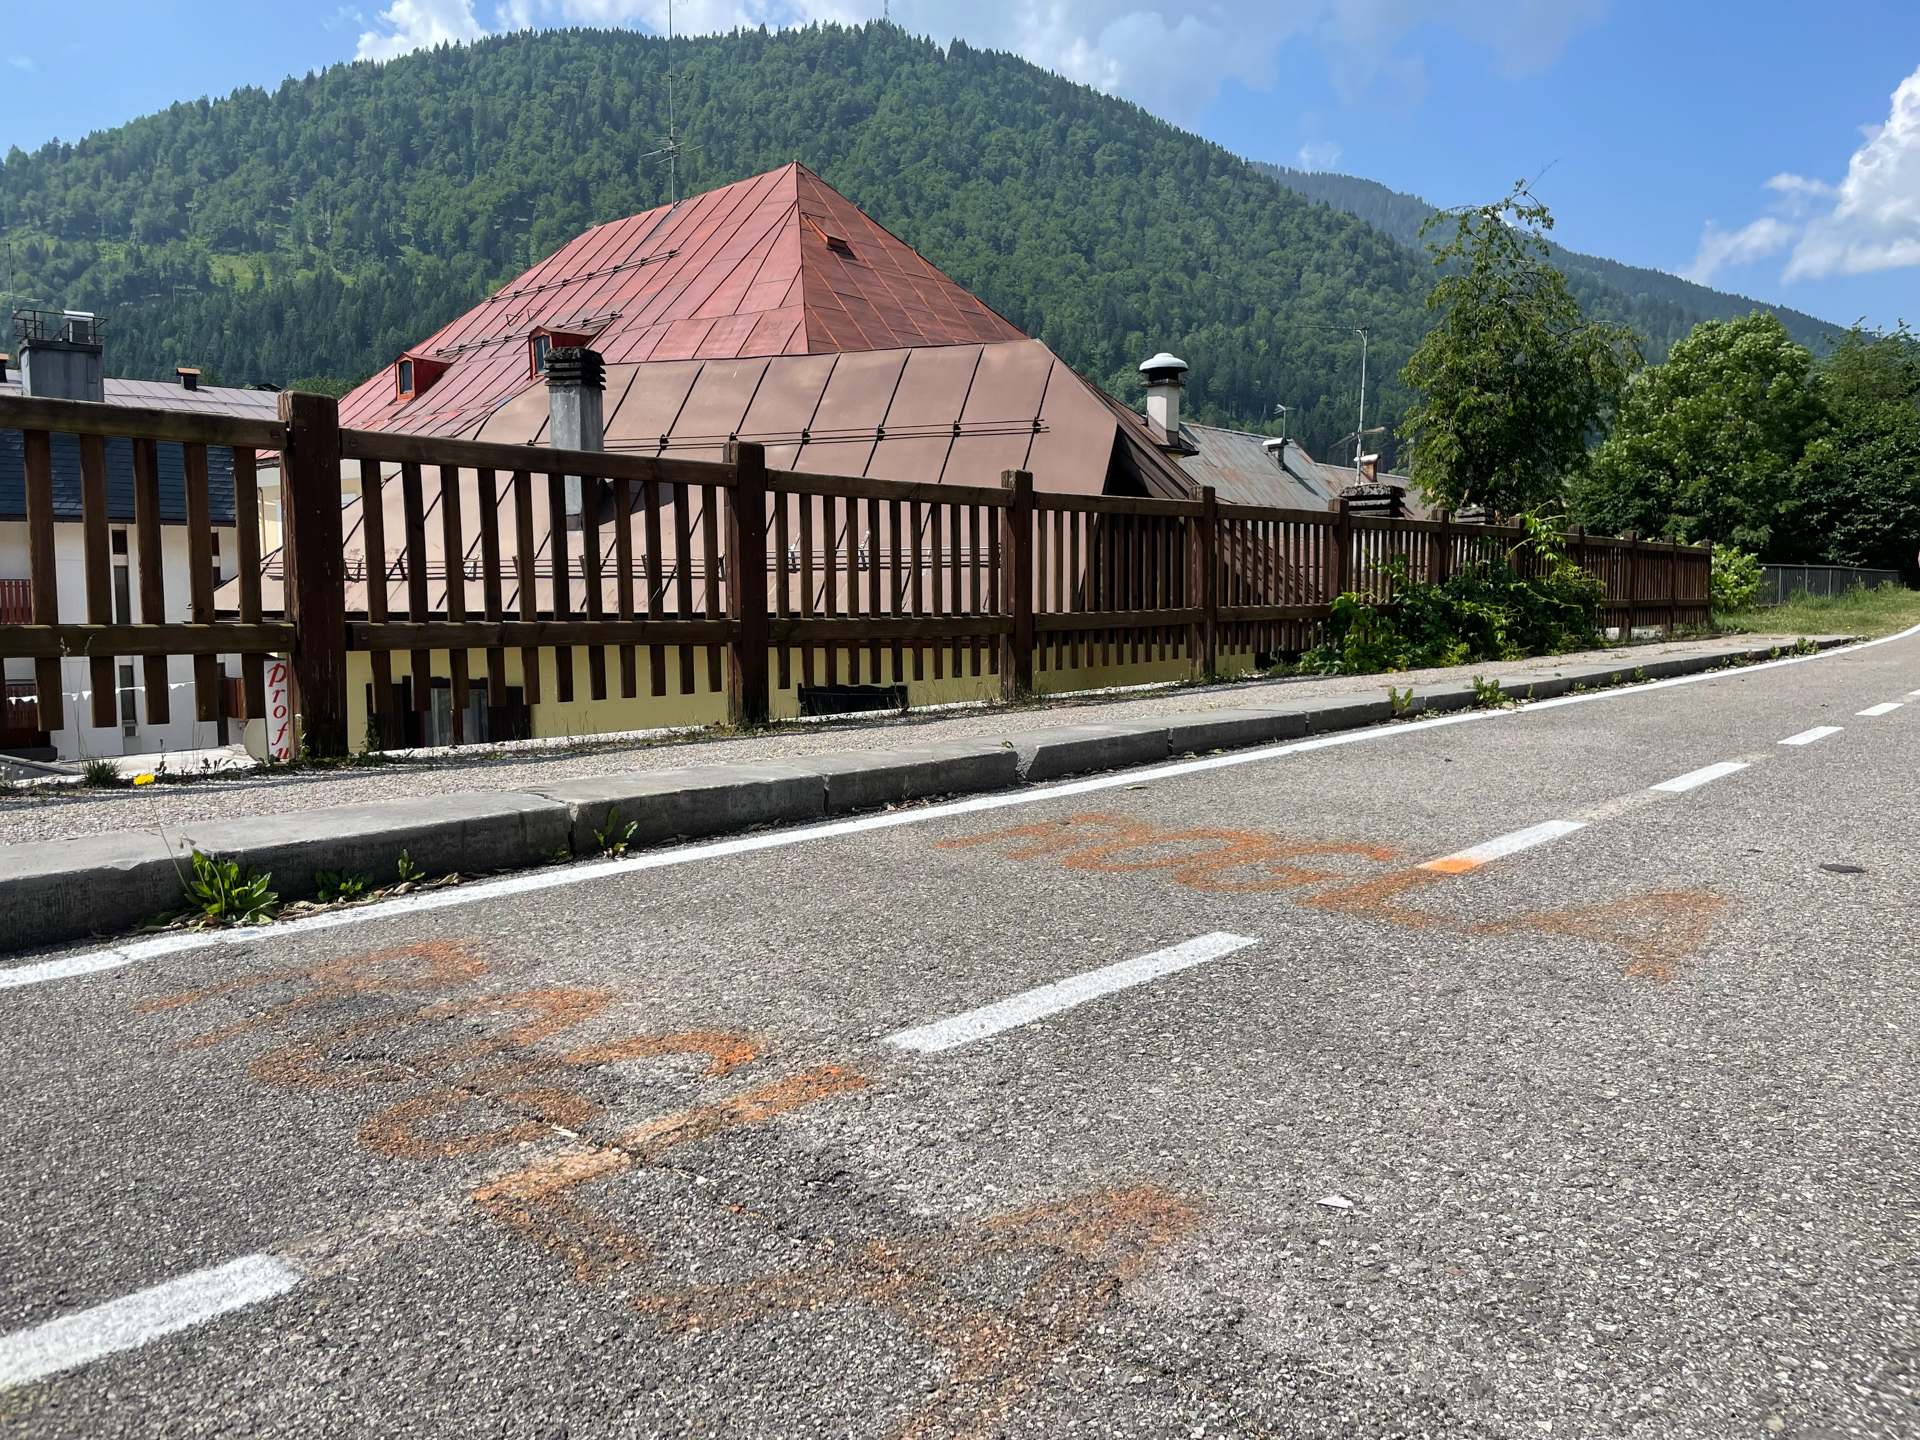 Faded paint on a hillside road reads "Rogla".